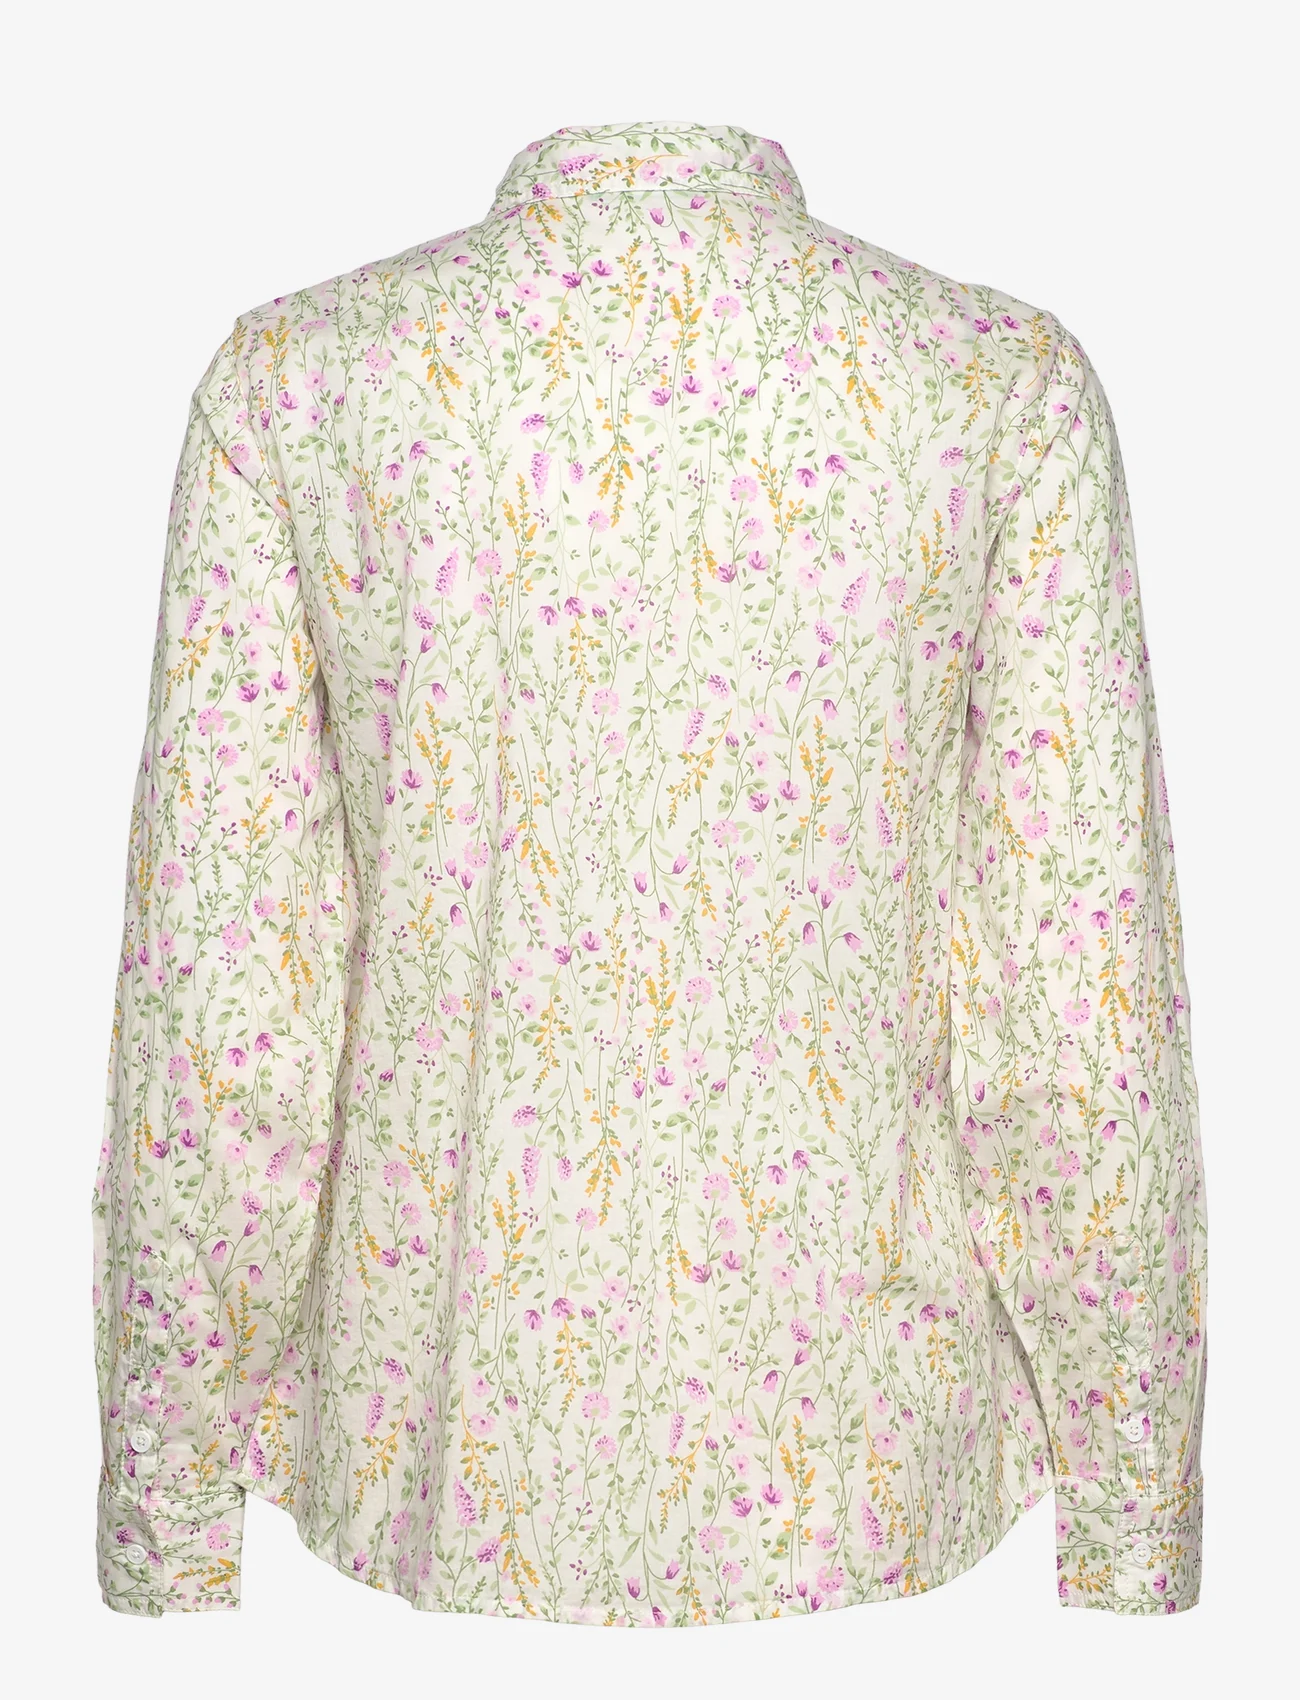 United Colors of Benetton - SHIRT - marškiniai ilgomis rankovėmis - white - 1